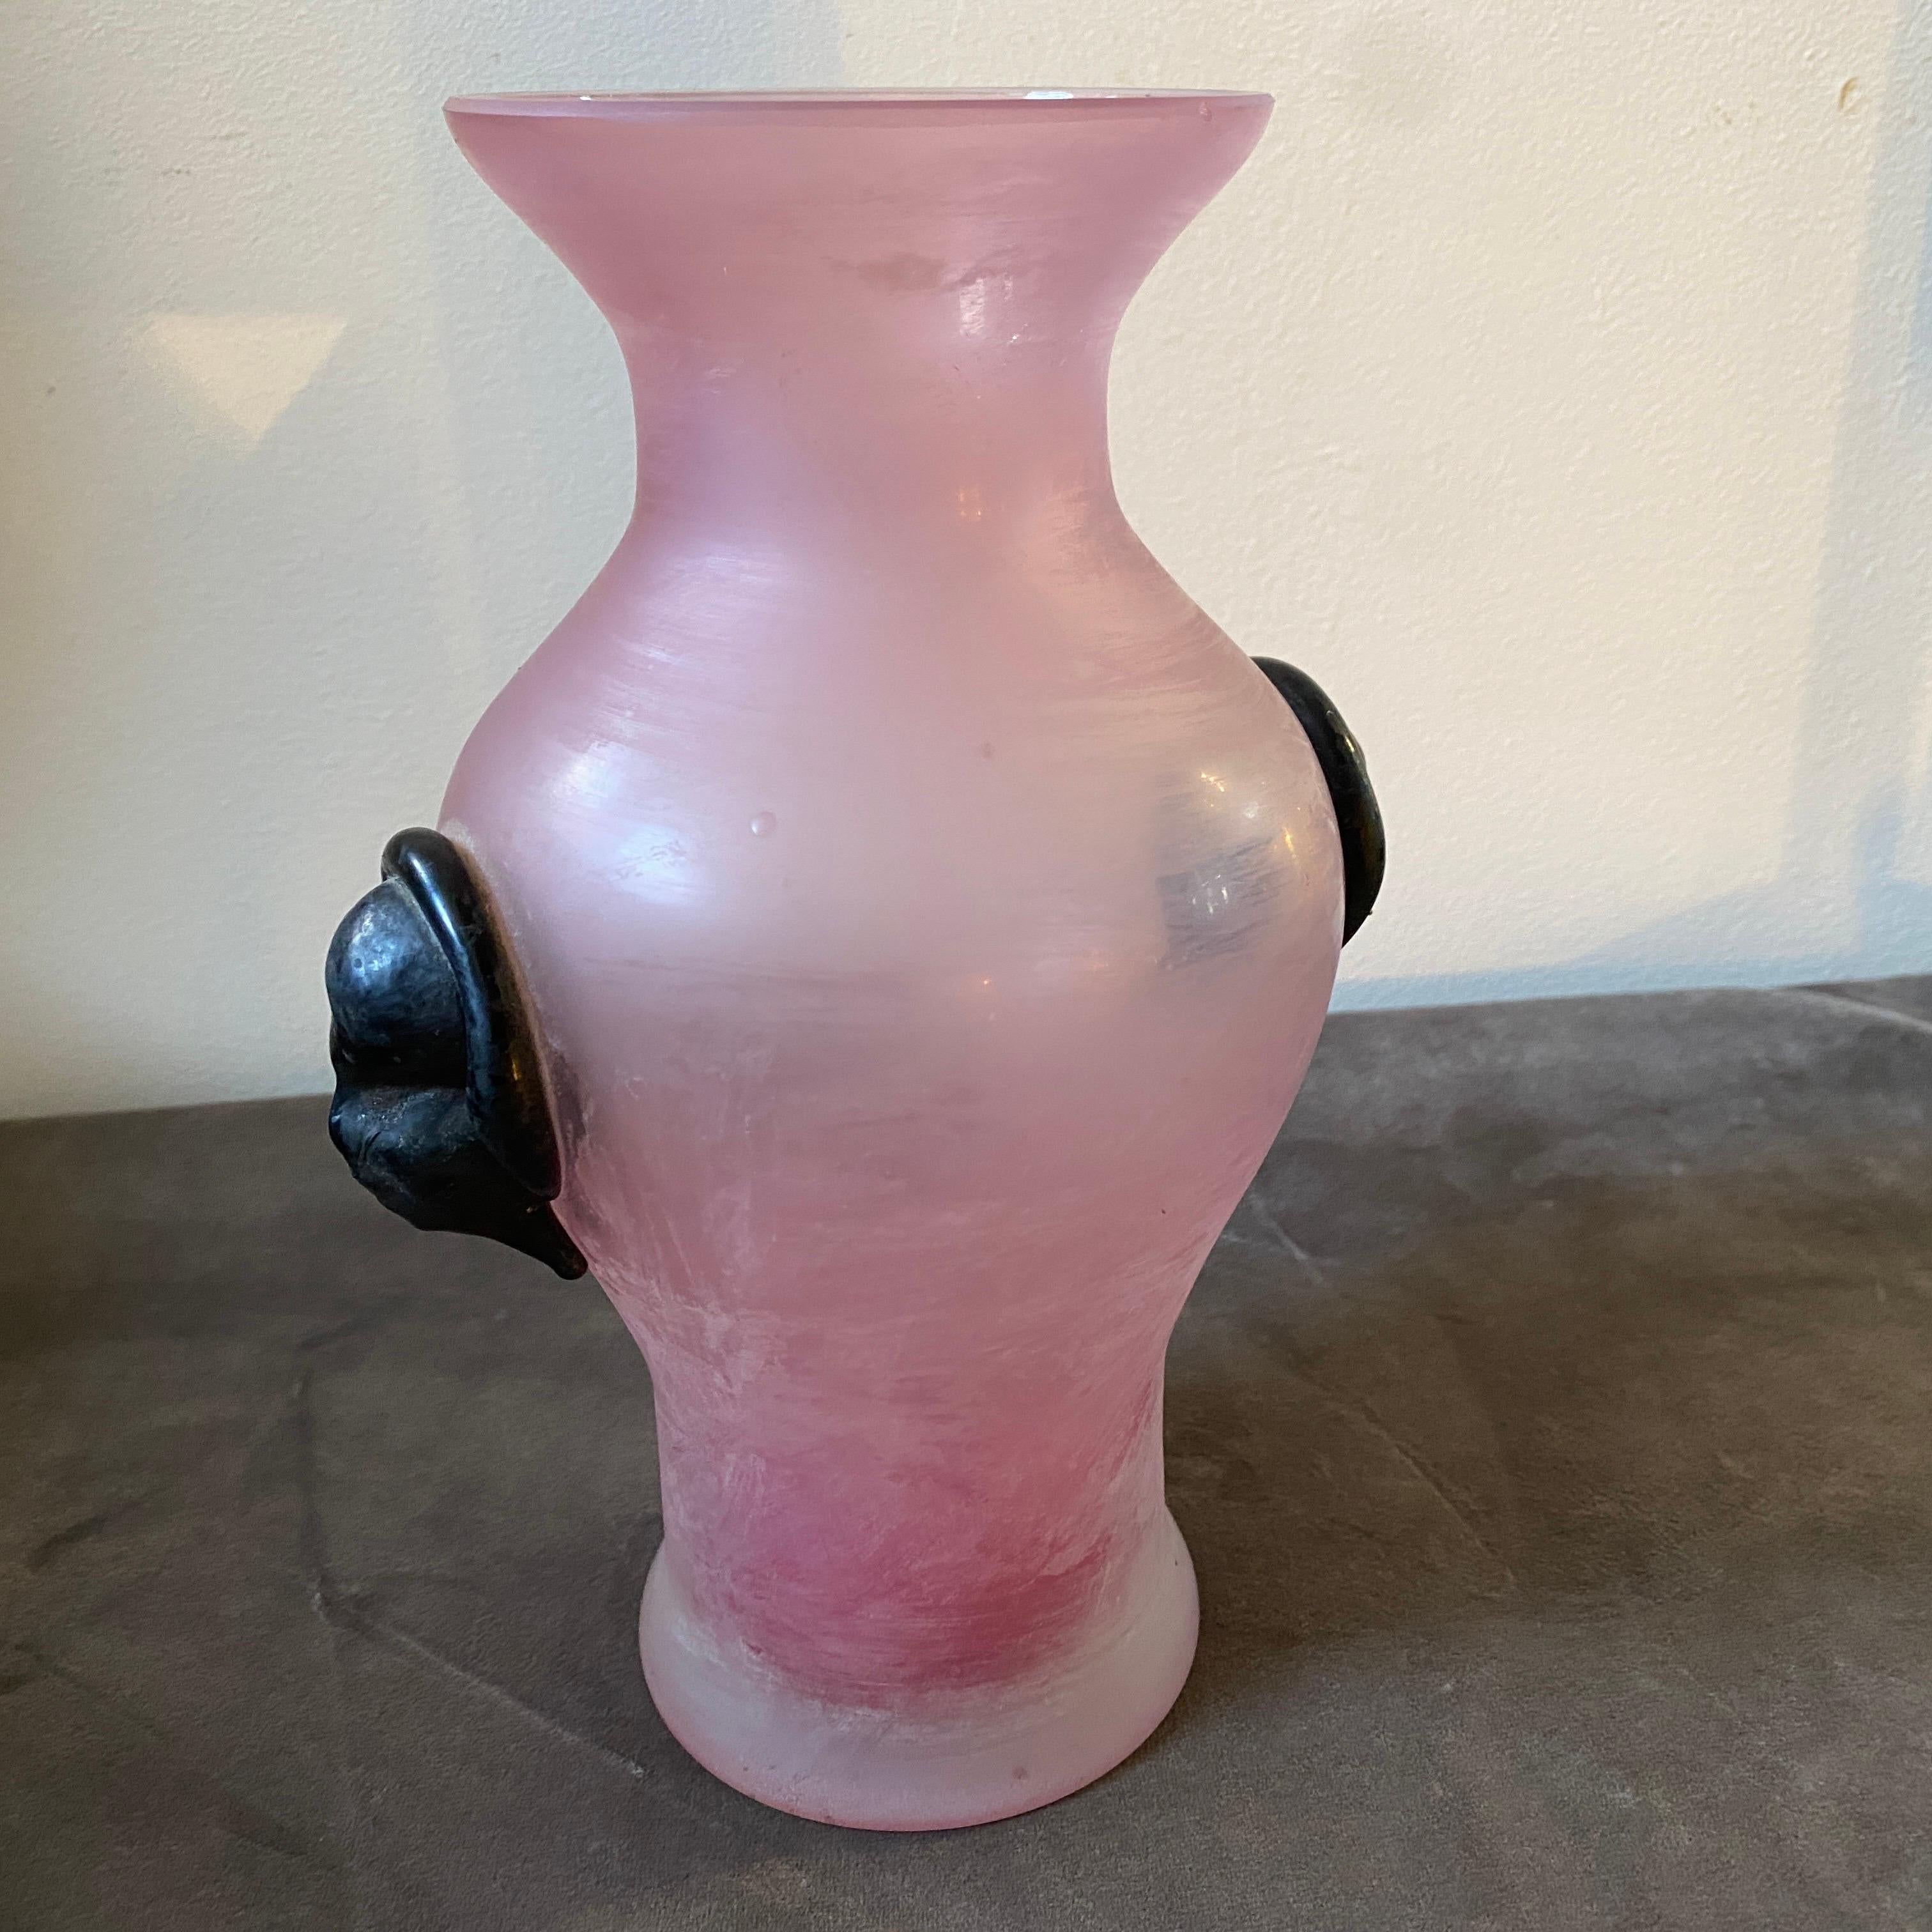 Eine hochwertige Vase aus rosafarbenem Scavo Murano-Glas mit zwei aufgelegten schwarzen Glasmasken, die Cenedese zugeschrieben werden. Es ist in perfektem Zustand. Hergestellt aus Murano-Glas, das für seine außergewöhnliche Klarheit, Reinheit und